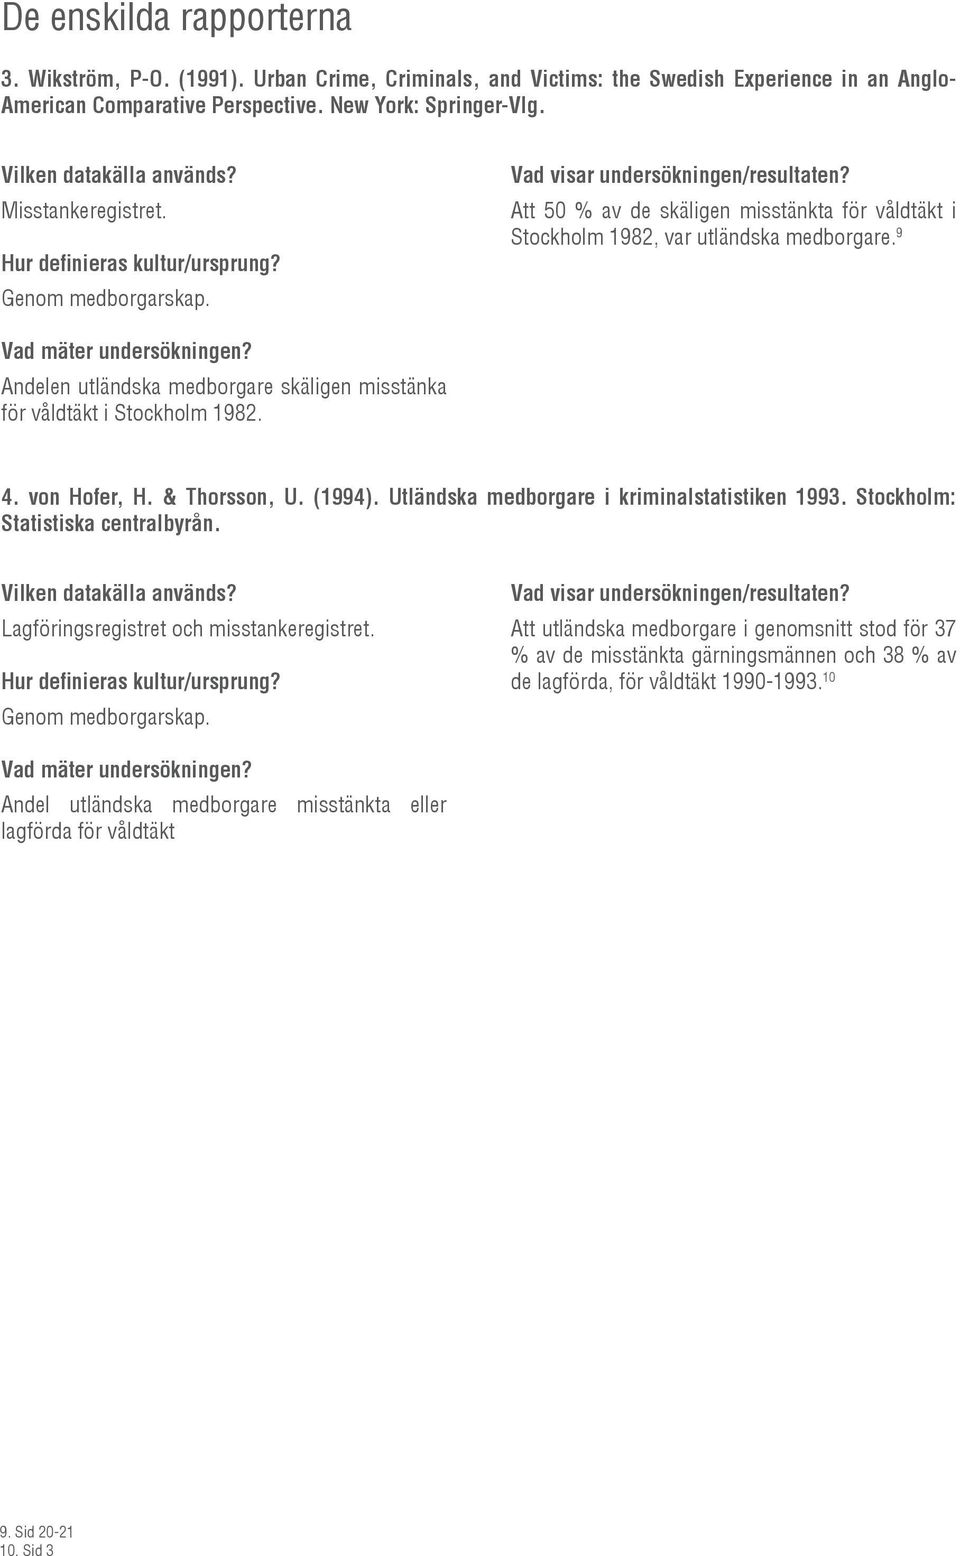 von Hofer, H. & Thorsson, U. (1994). Utländska medborgare i kriminalstatistiken 1993. Stockholm: Statistiska centralbyrån. Lagföringsregistret och misstankeregistret. Genom medborgarskap.